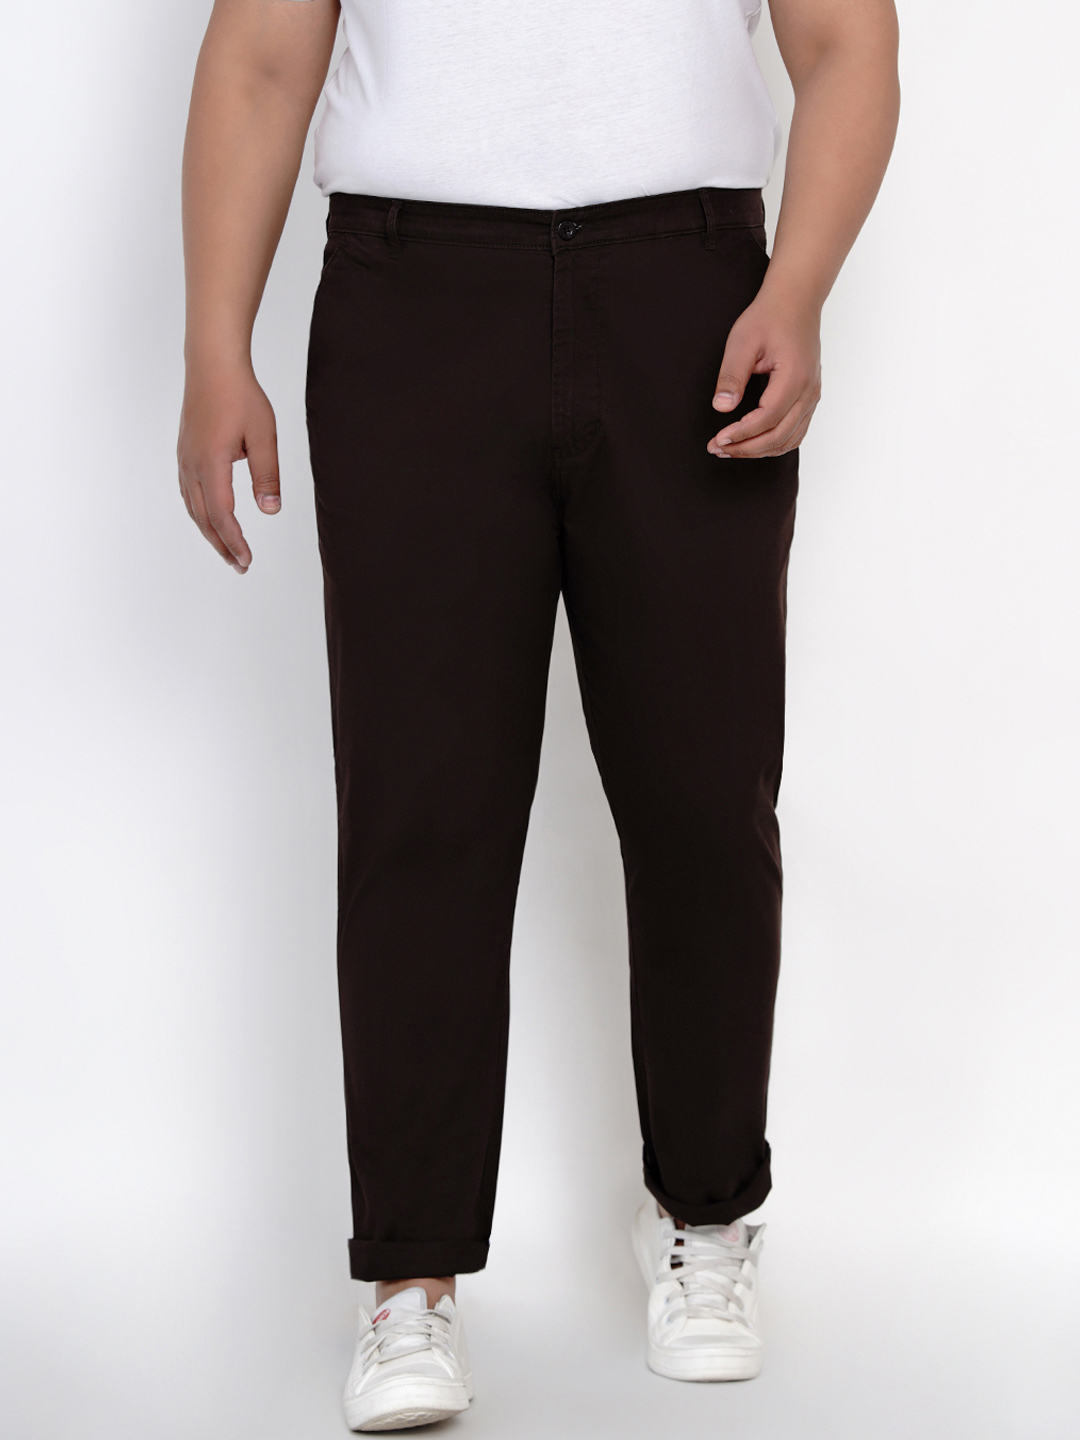 bottomwear/trousers/JPTR2161H/jptr2161h-1.jpg